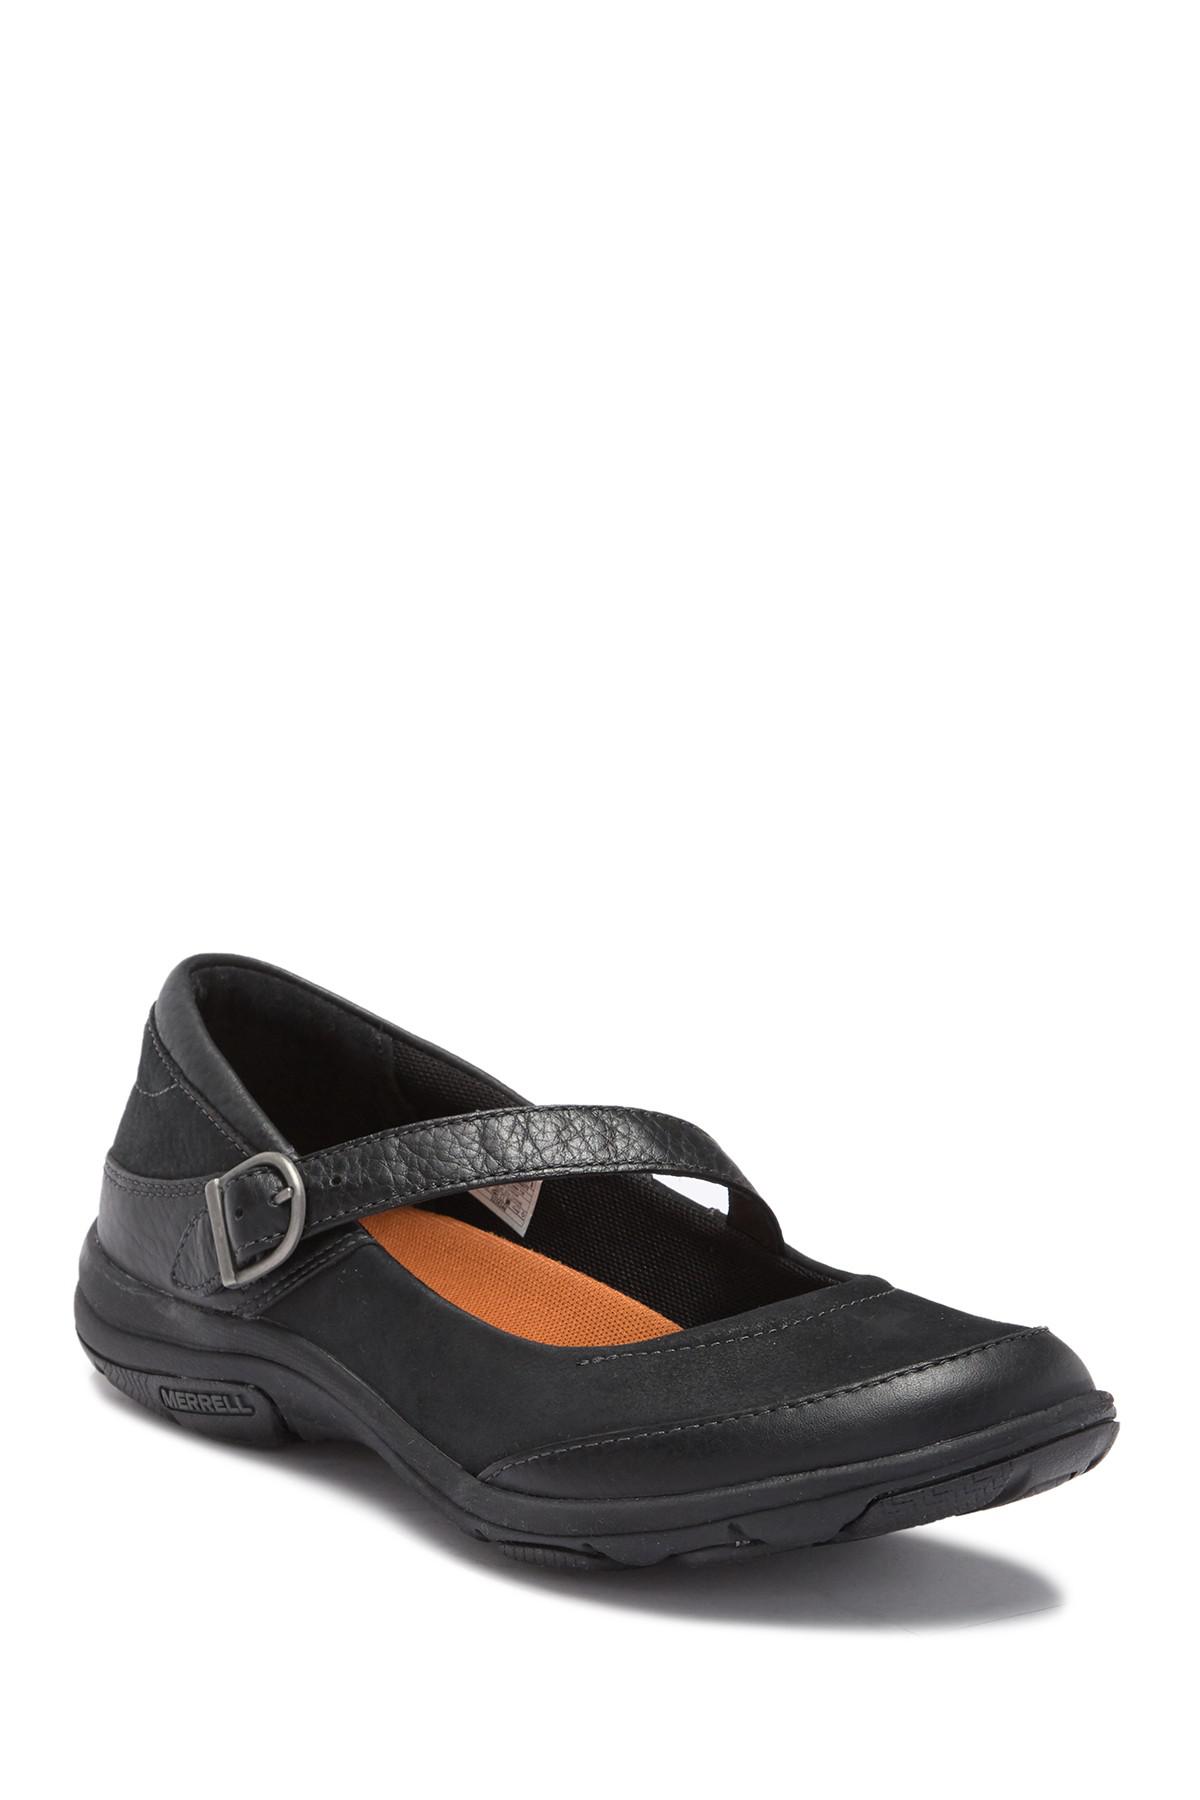 Merrell Dassie Jane Shoes in Black | Lyst